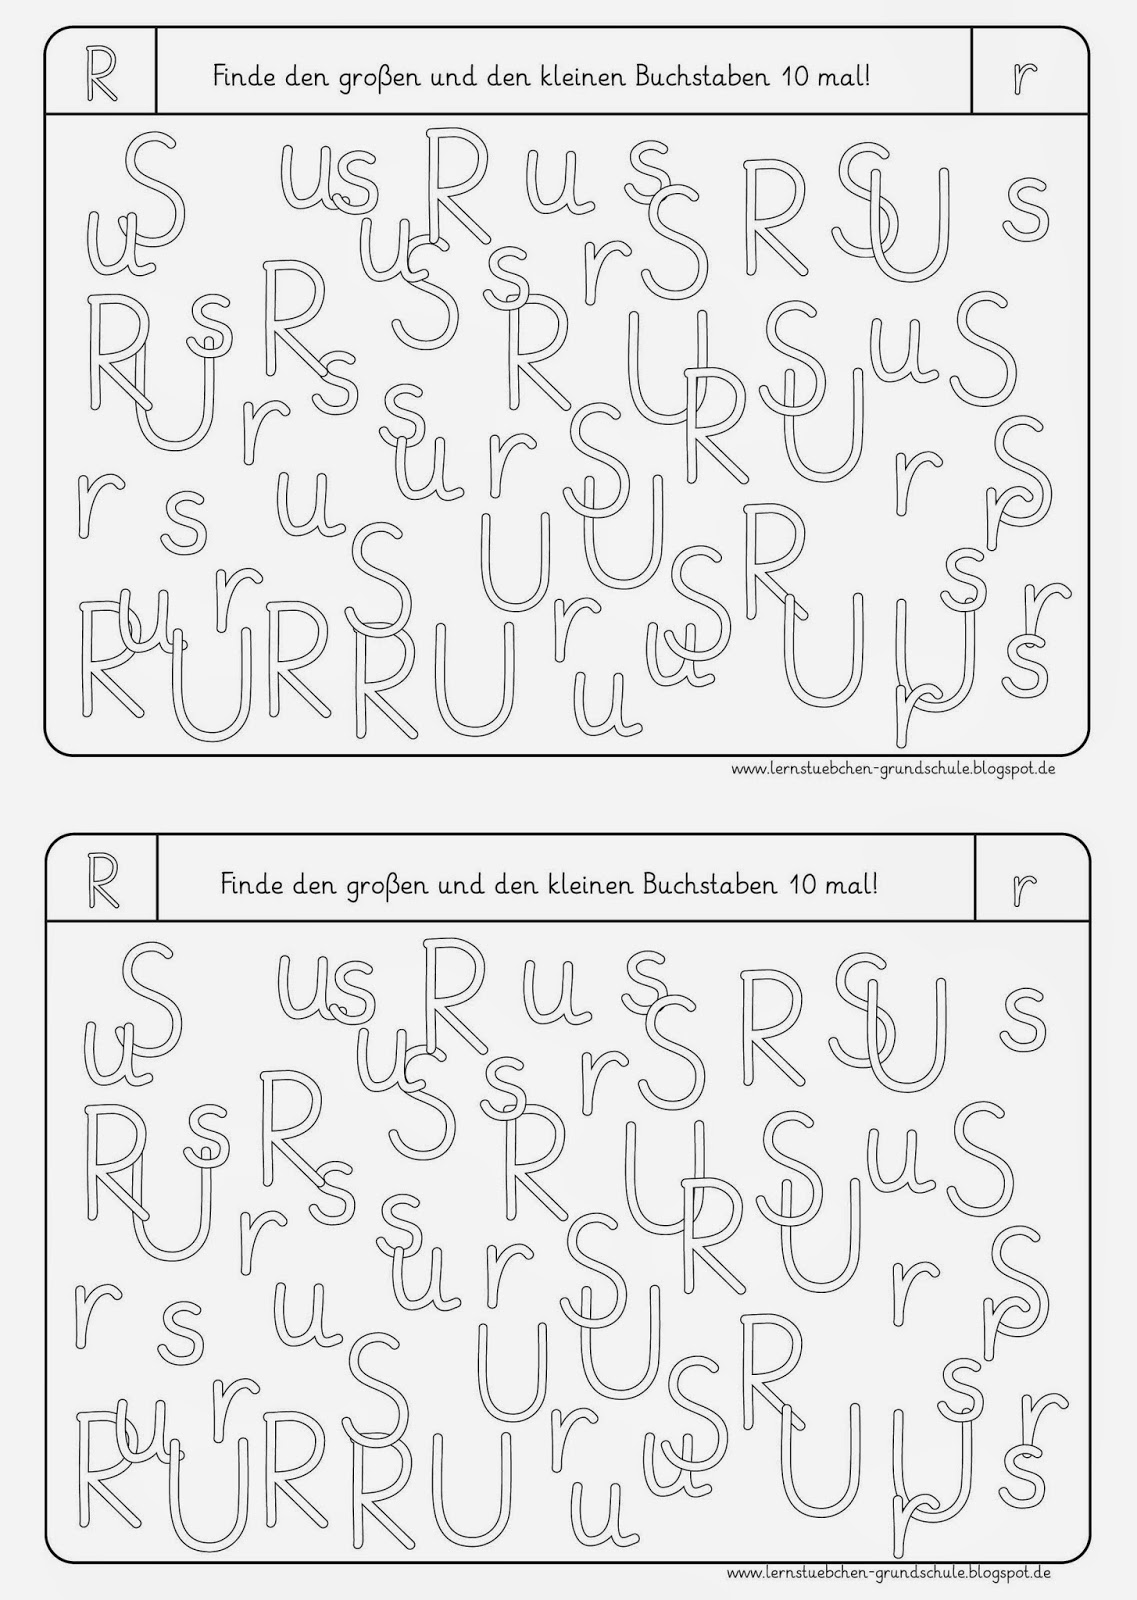 Lernstübchen: Buchstaben erkennen U, R, S, N, T, I